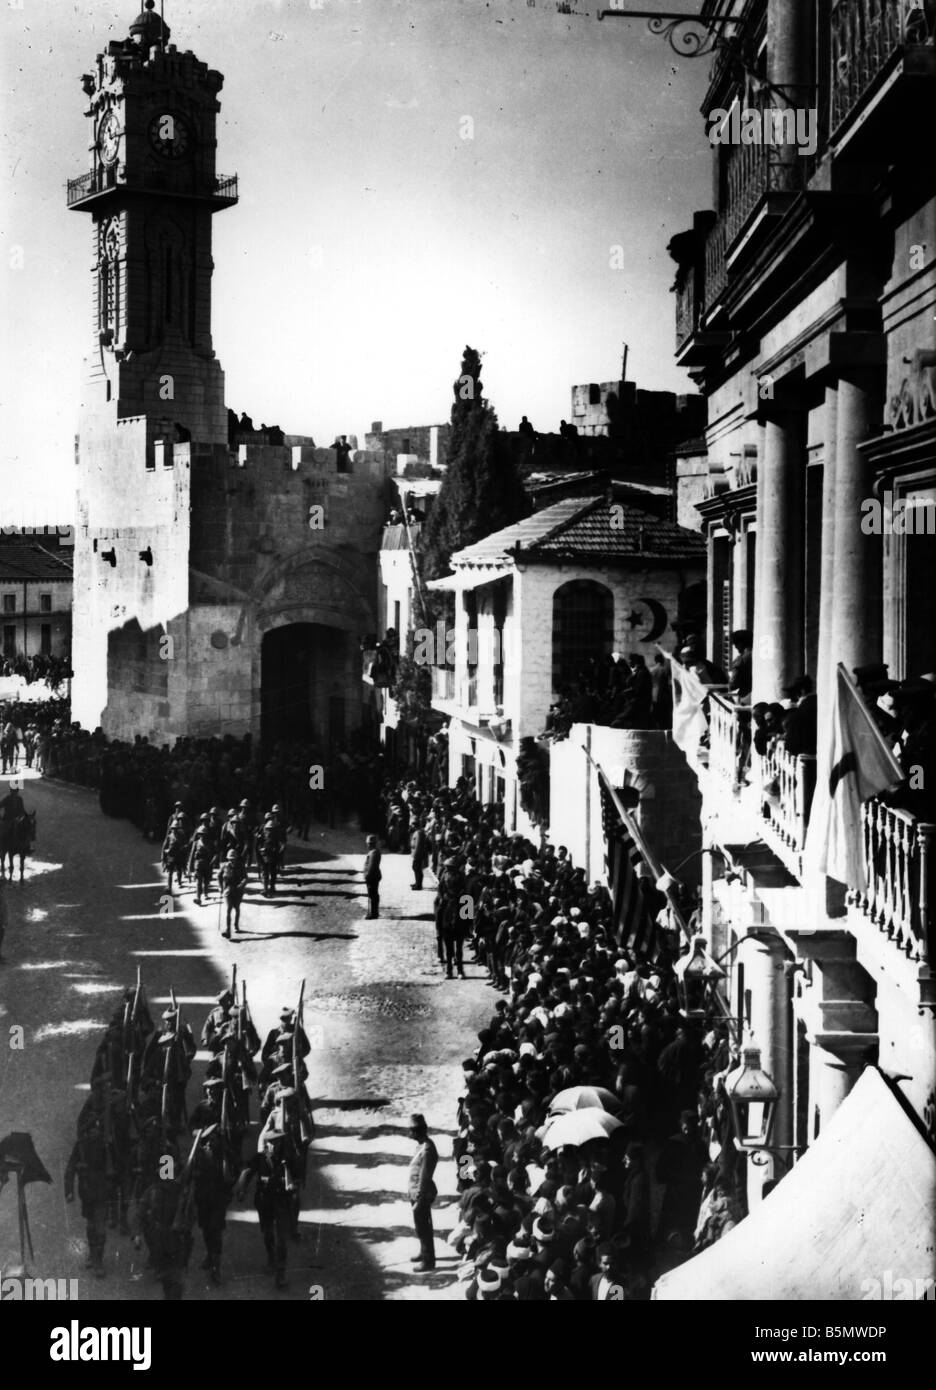 9IS 1917 12 9 A1 5 E WW1 erfassen von Jerusalem durch Großbritannien 1. Weltkrieg türkische britischen Schlachten erfassen von Jerusalem durch britische Tro Stockfoto